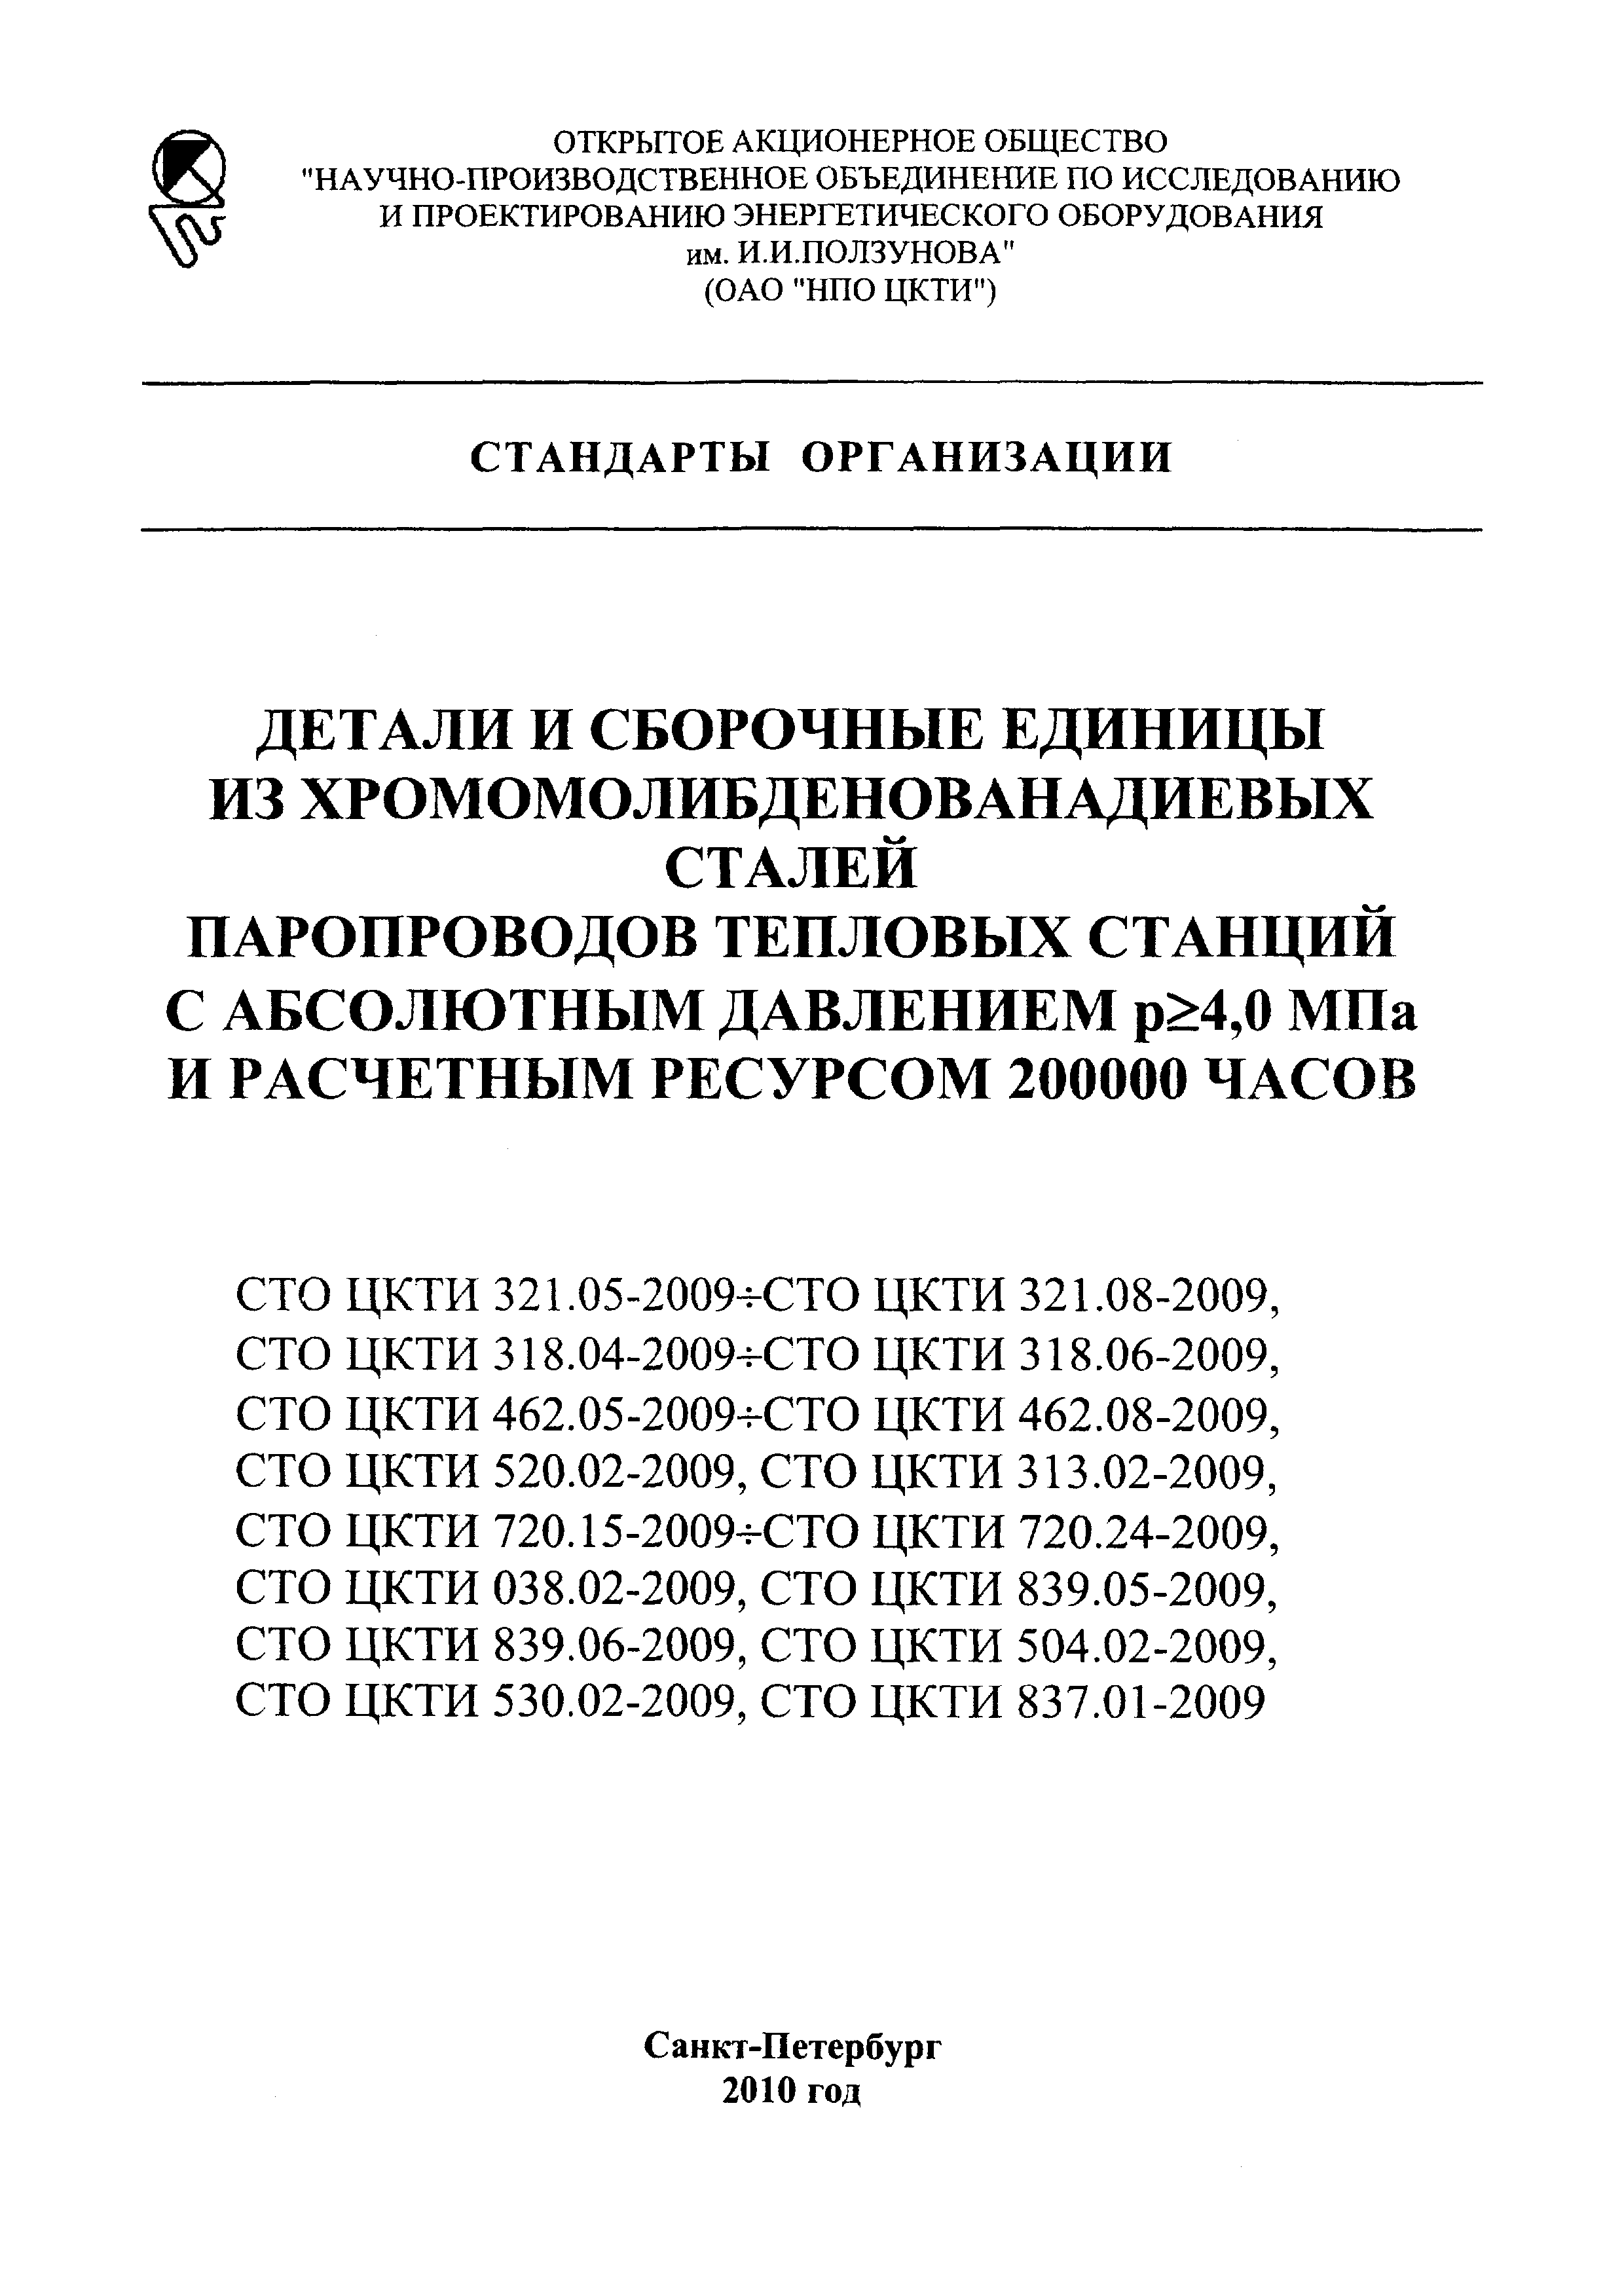 СТО ЦКТИ 720.16-2009